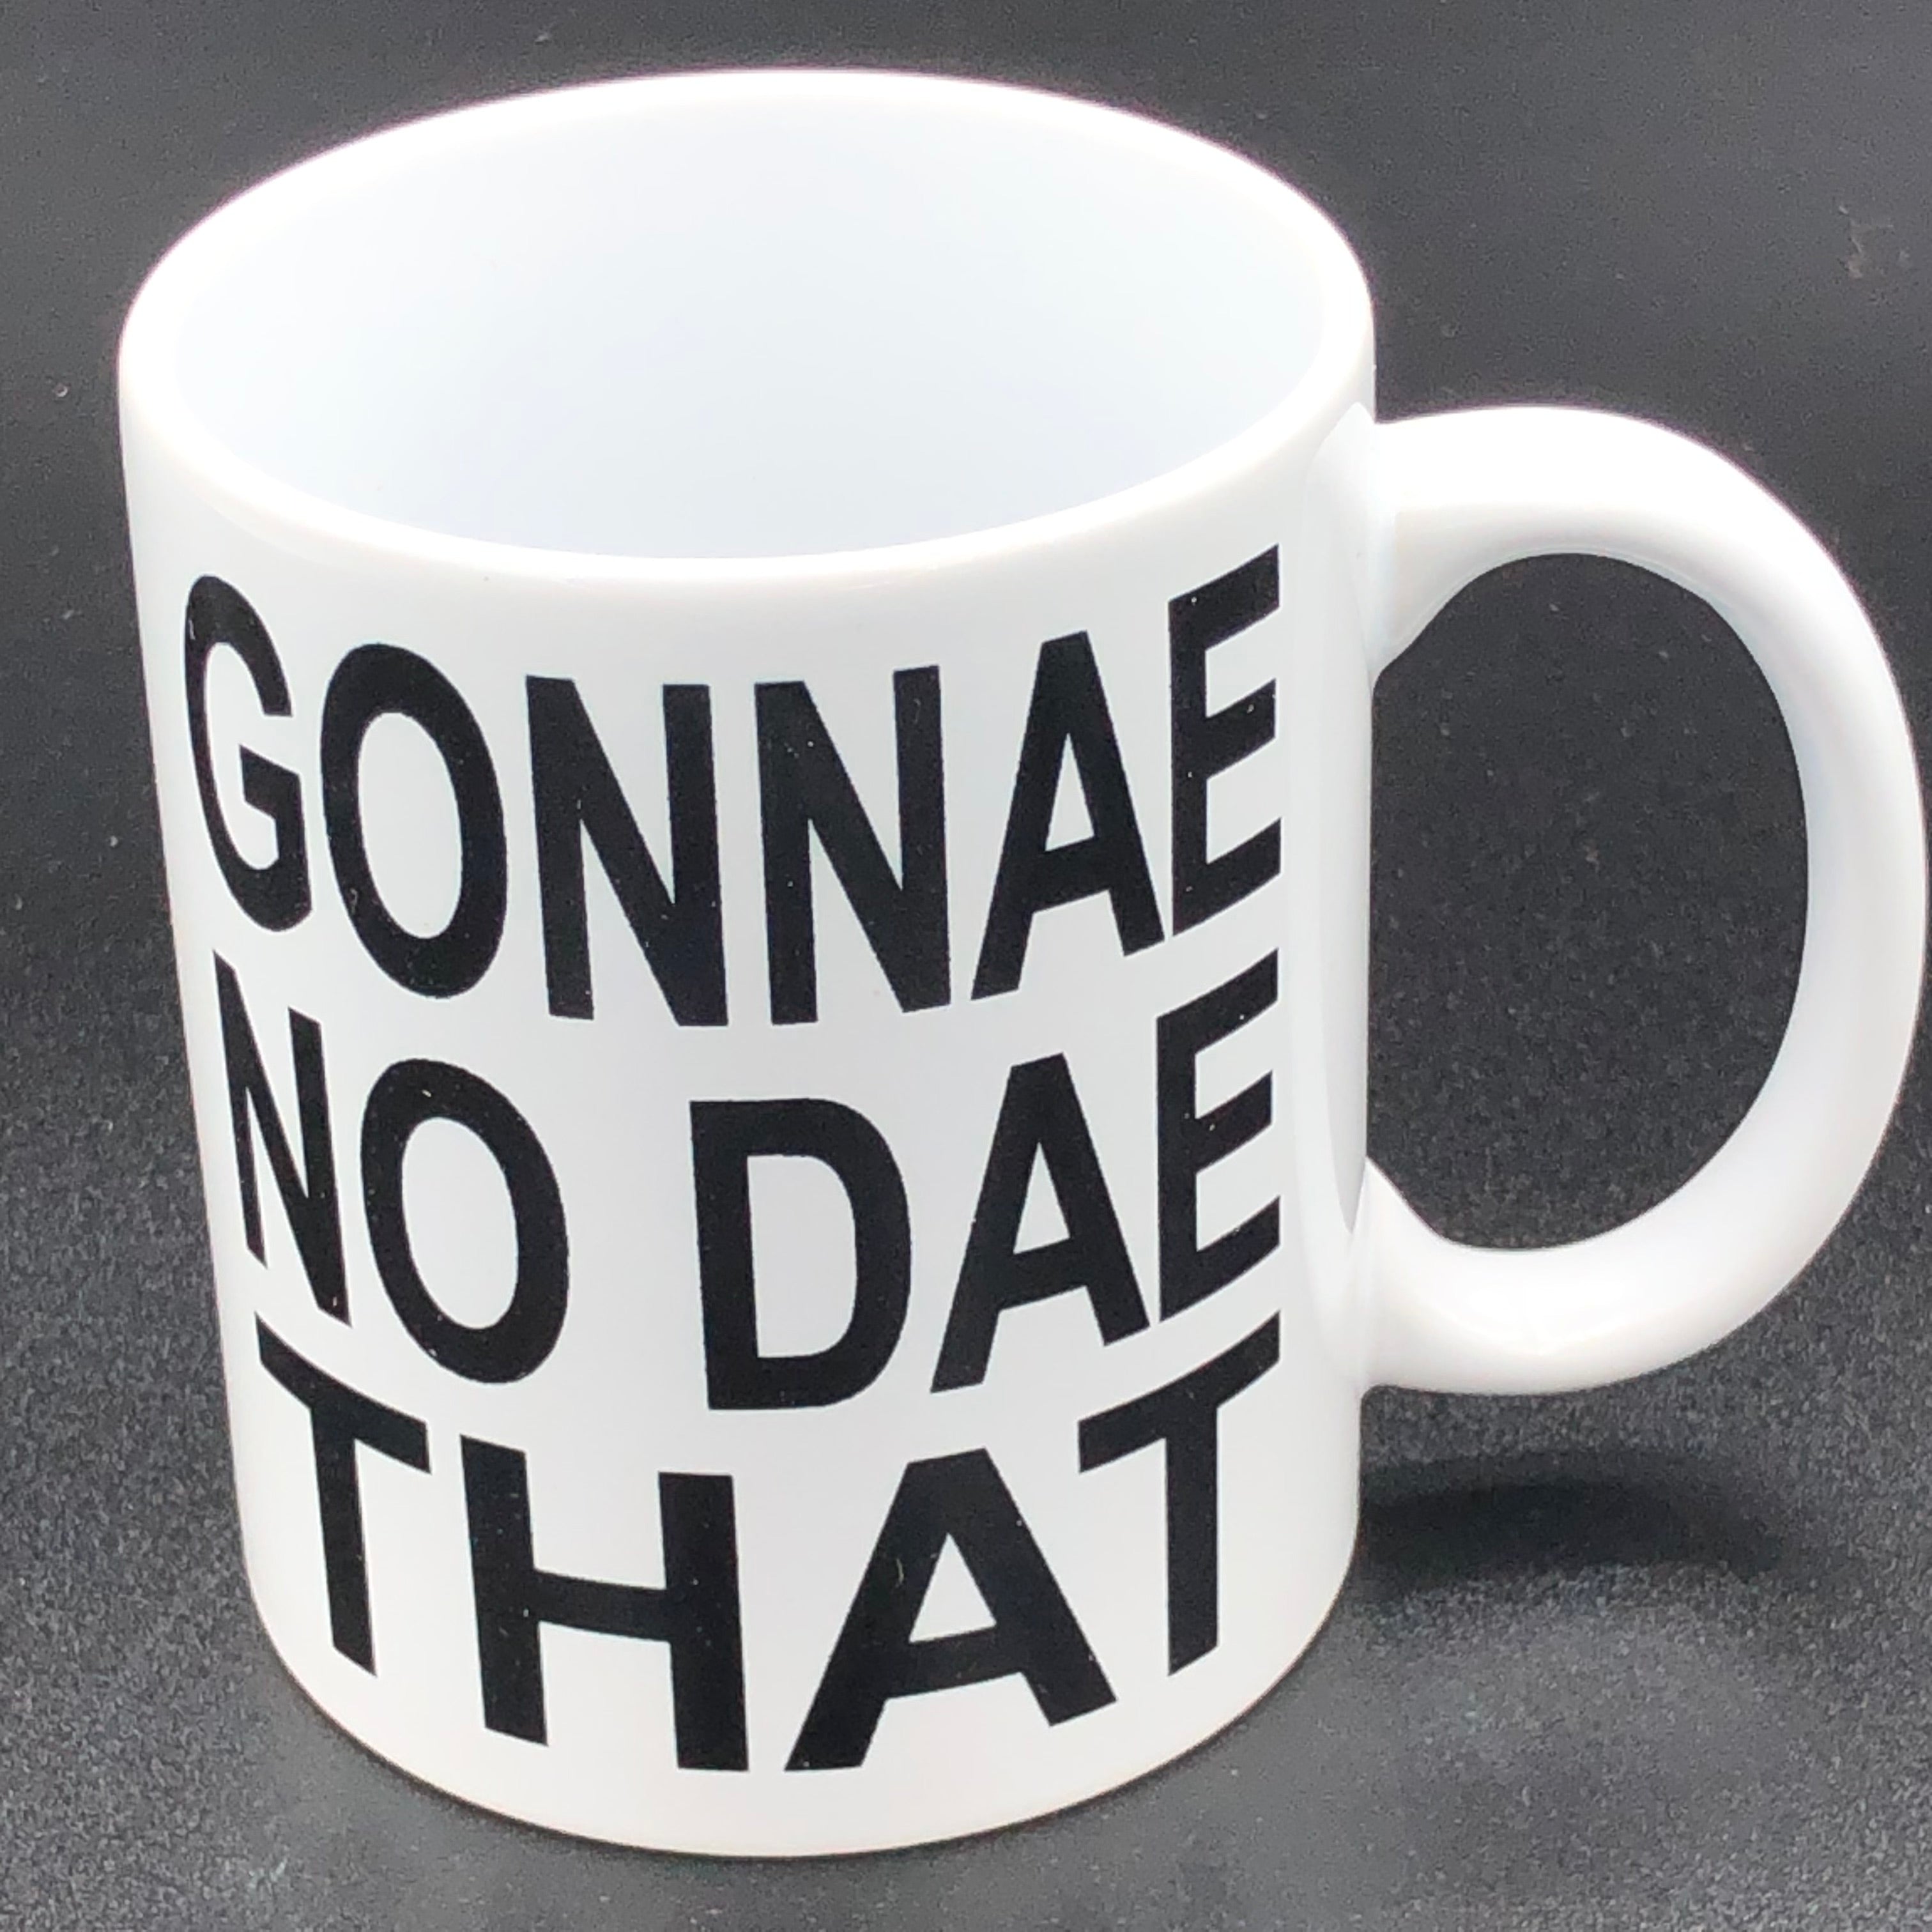 Ceramic mug - Sscottish - gonnae no dae that